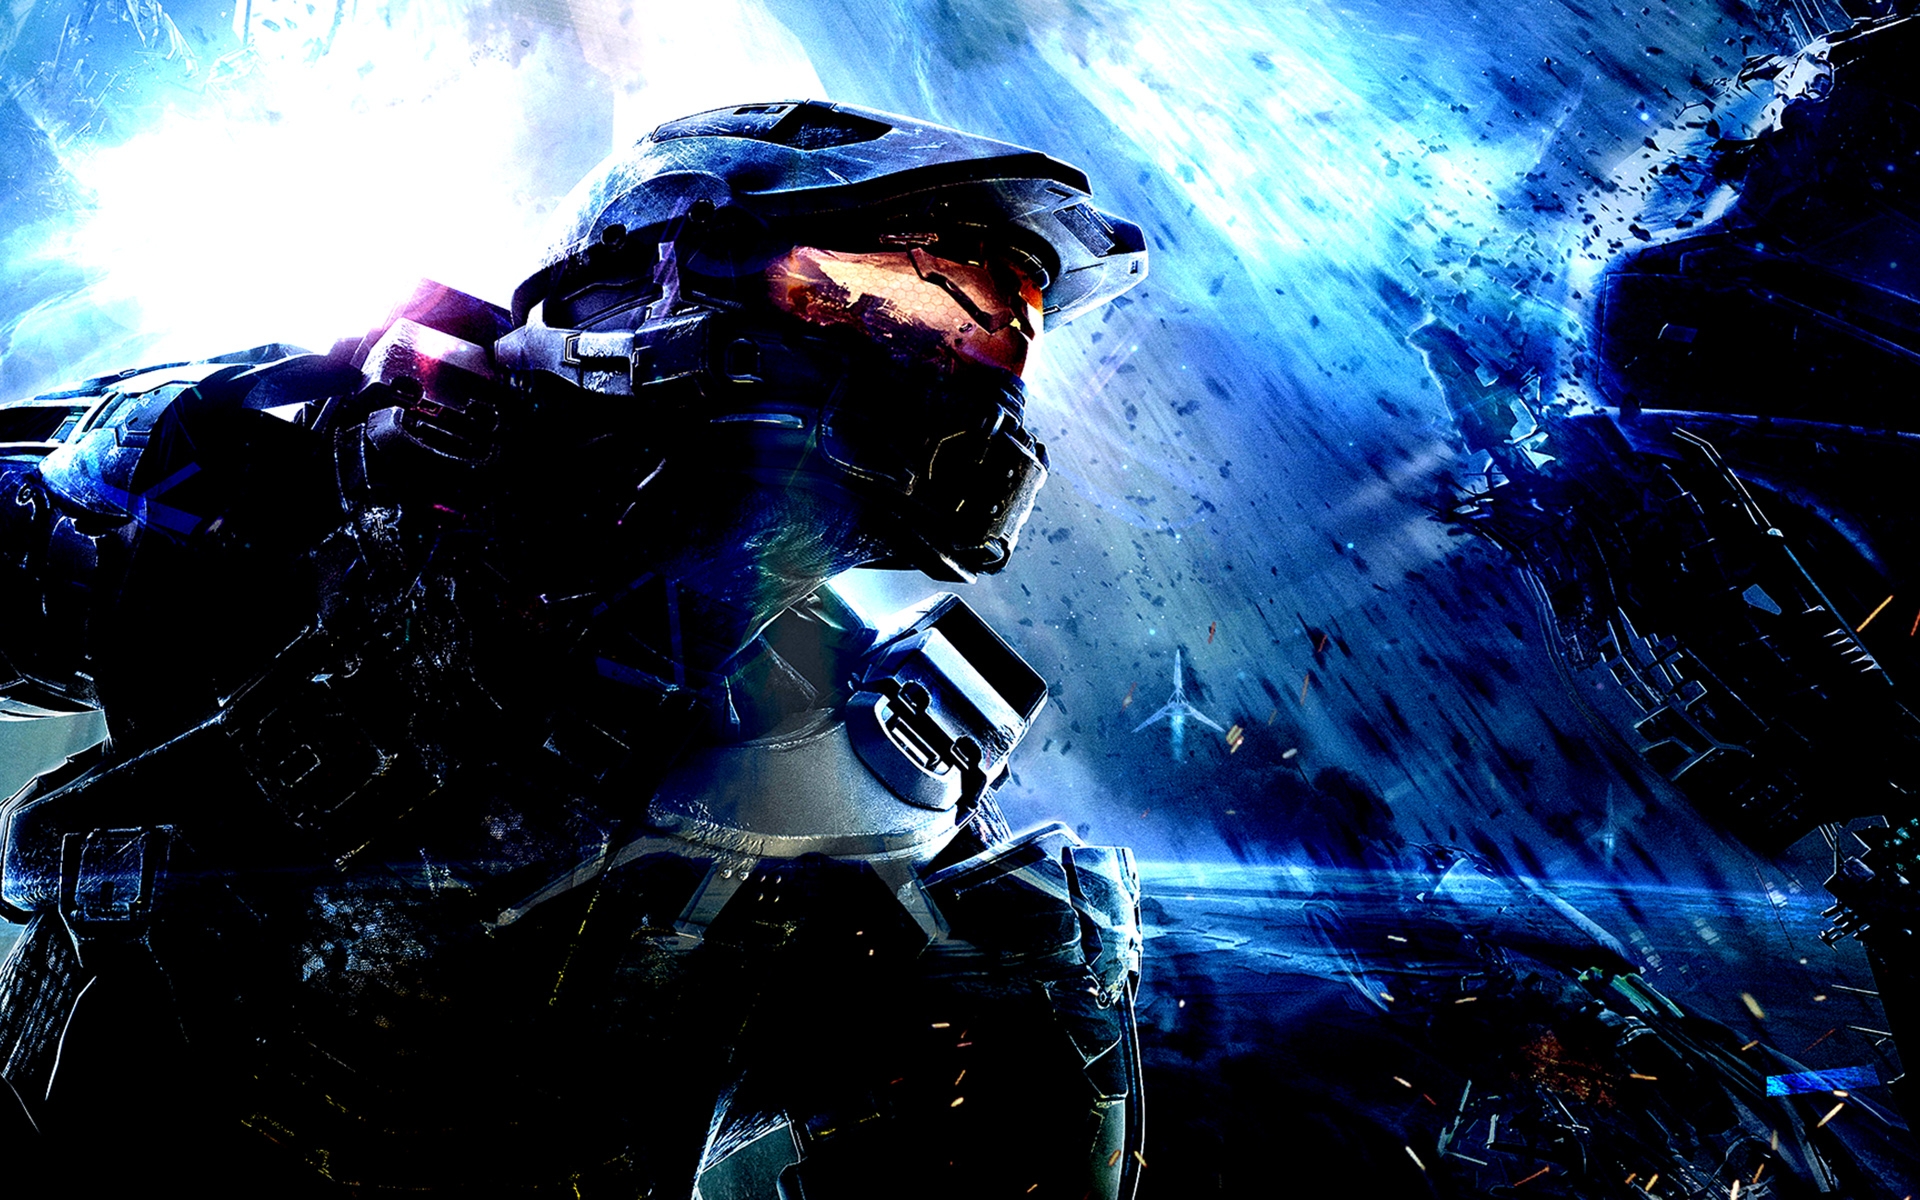 Halo 5: Guardians Art